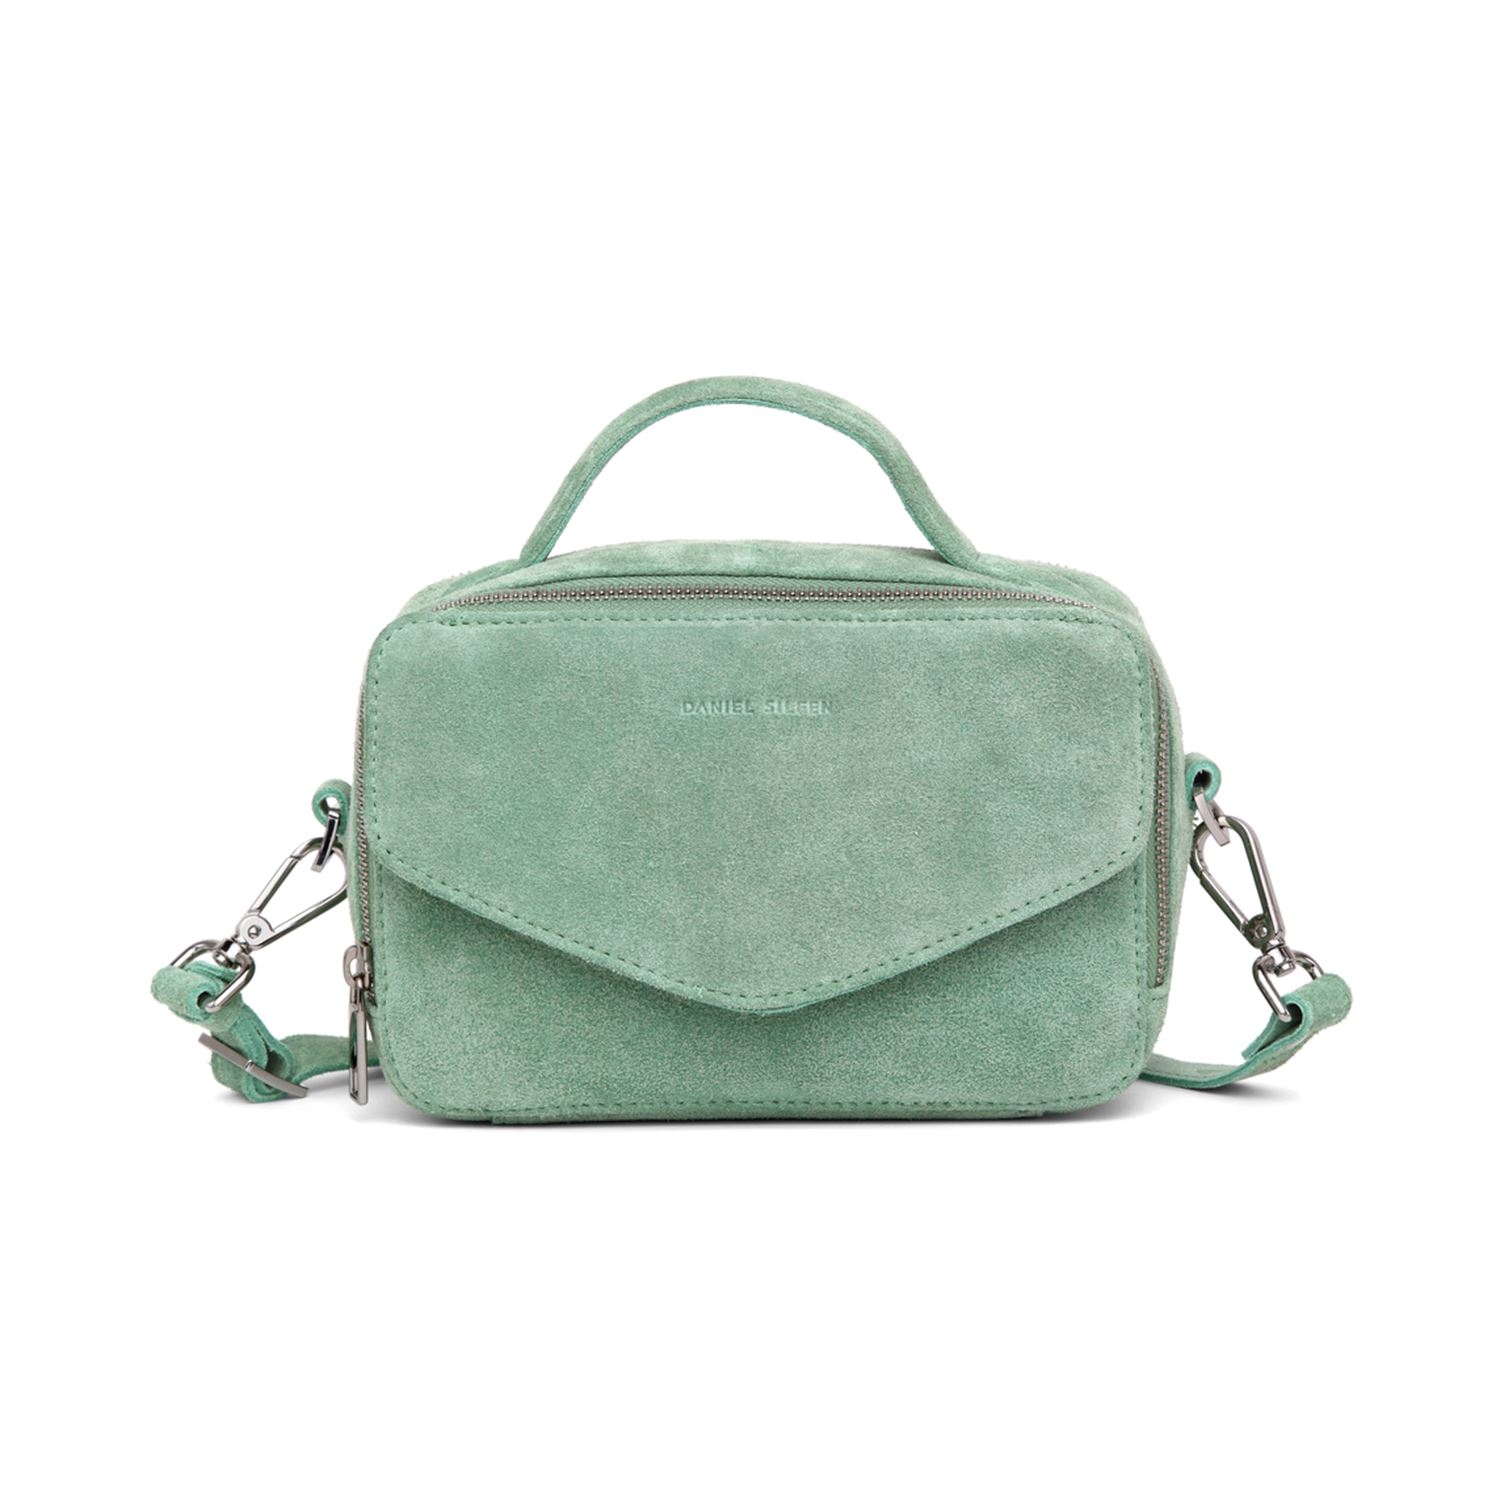 Daniel Silfen - Emma taske - green suede. Denne taske kommer i den smukkeste forårsfarve og så er der plads til alt det nødvendige der skal kunne være i en håndtaske.